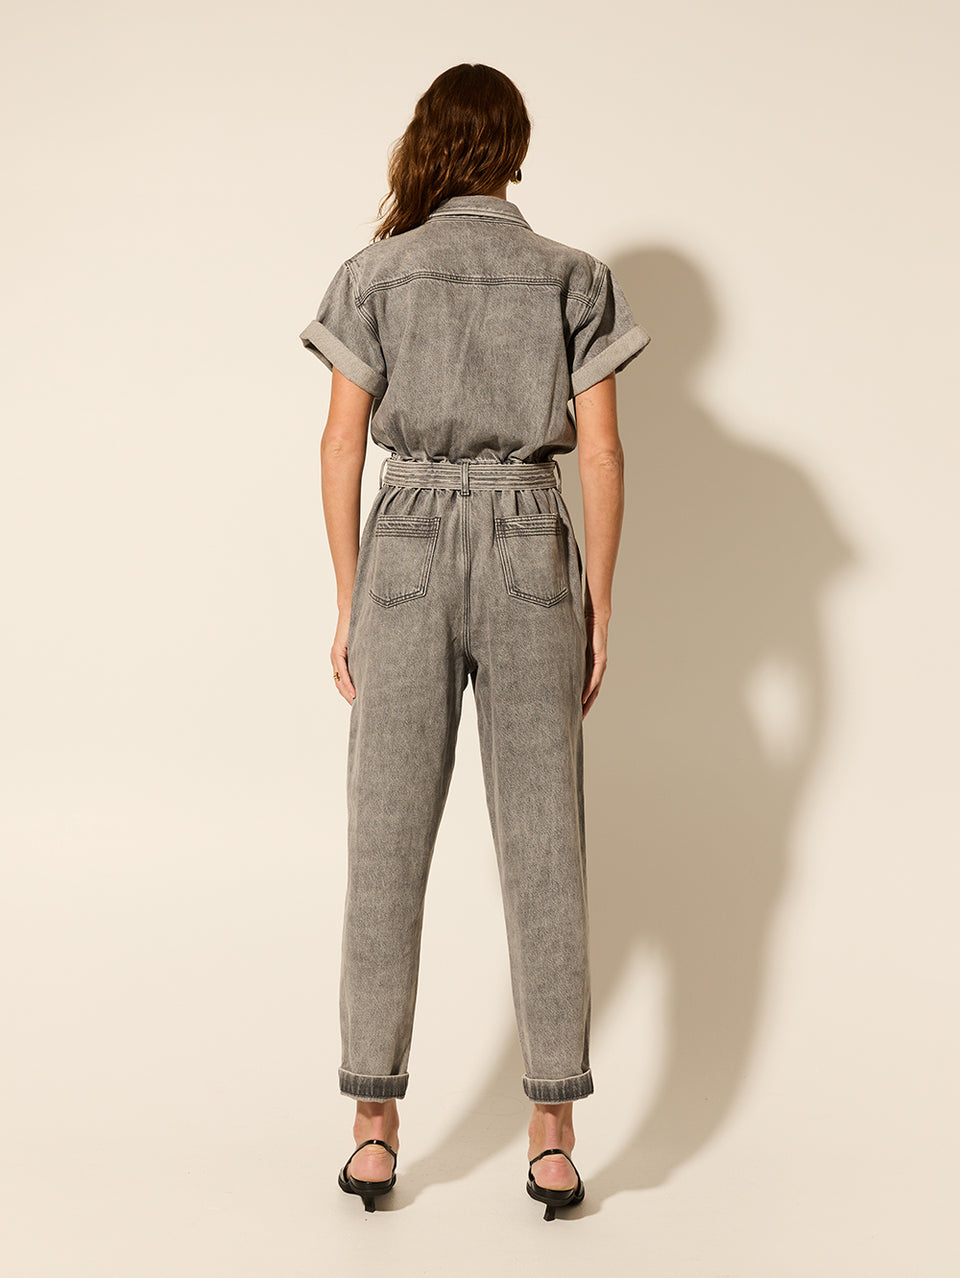 Brae Boilersuit Grey KIVARI | Model wears grey denim boilersuit back view